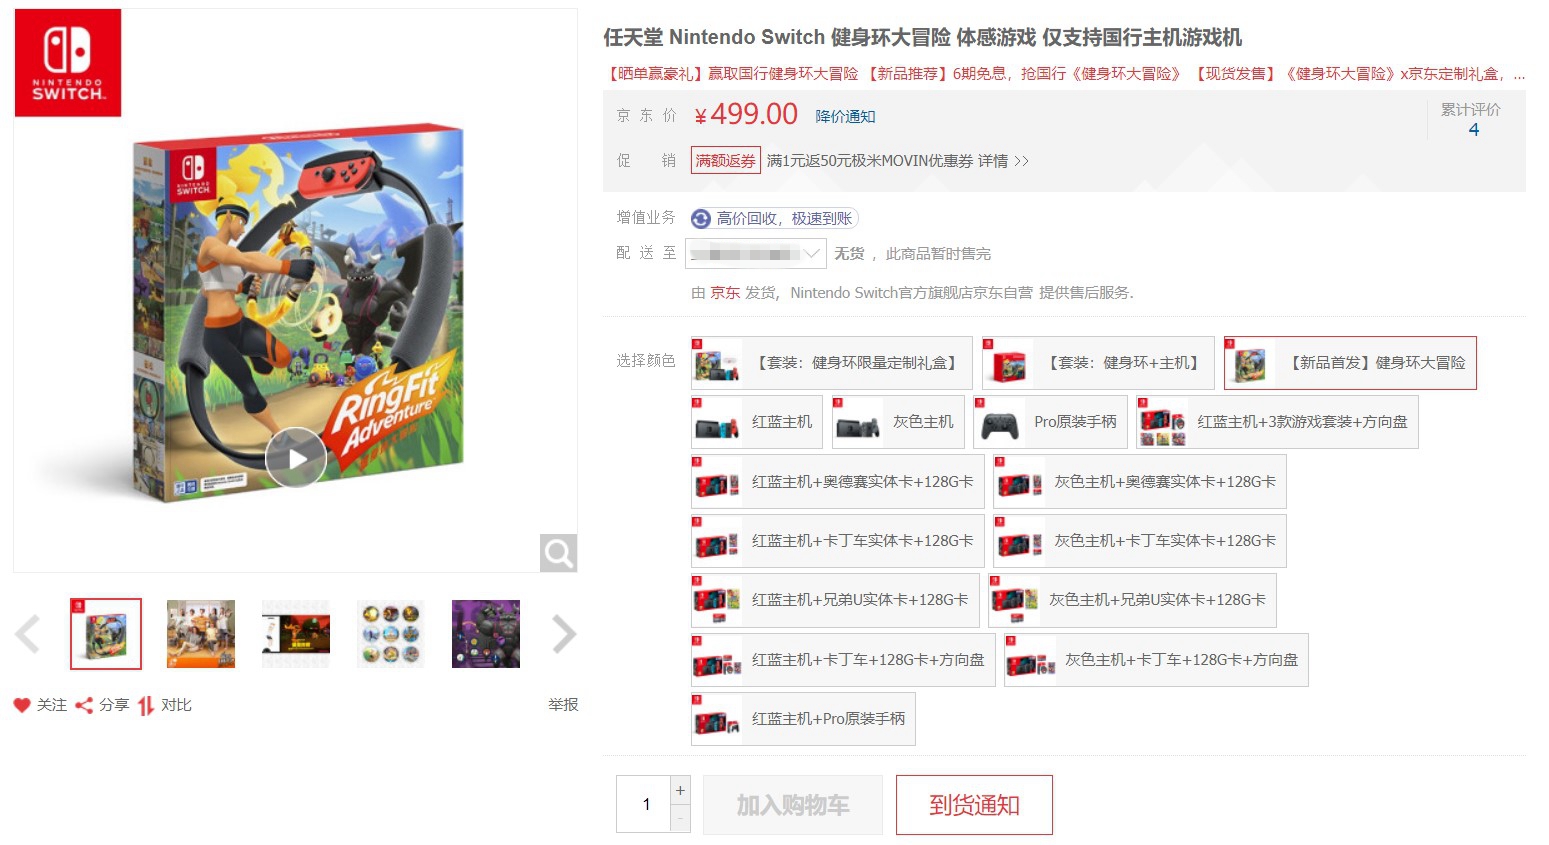 国行《健身环大冒险》首销 京东售罄 天猫销量8500+